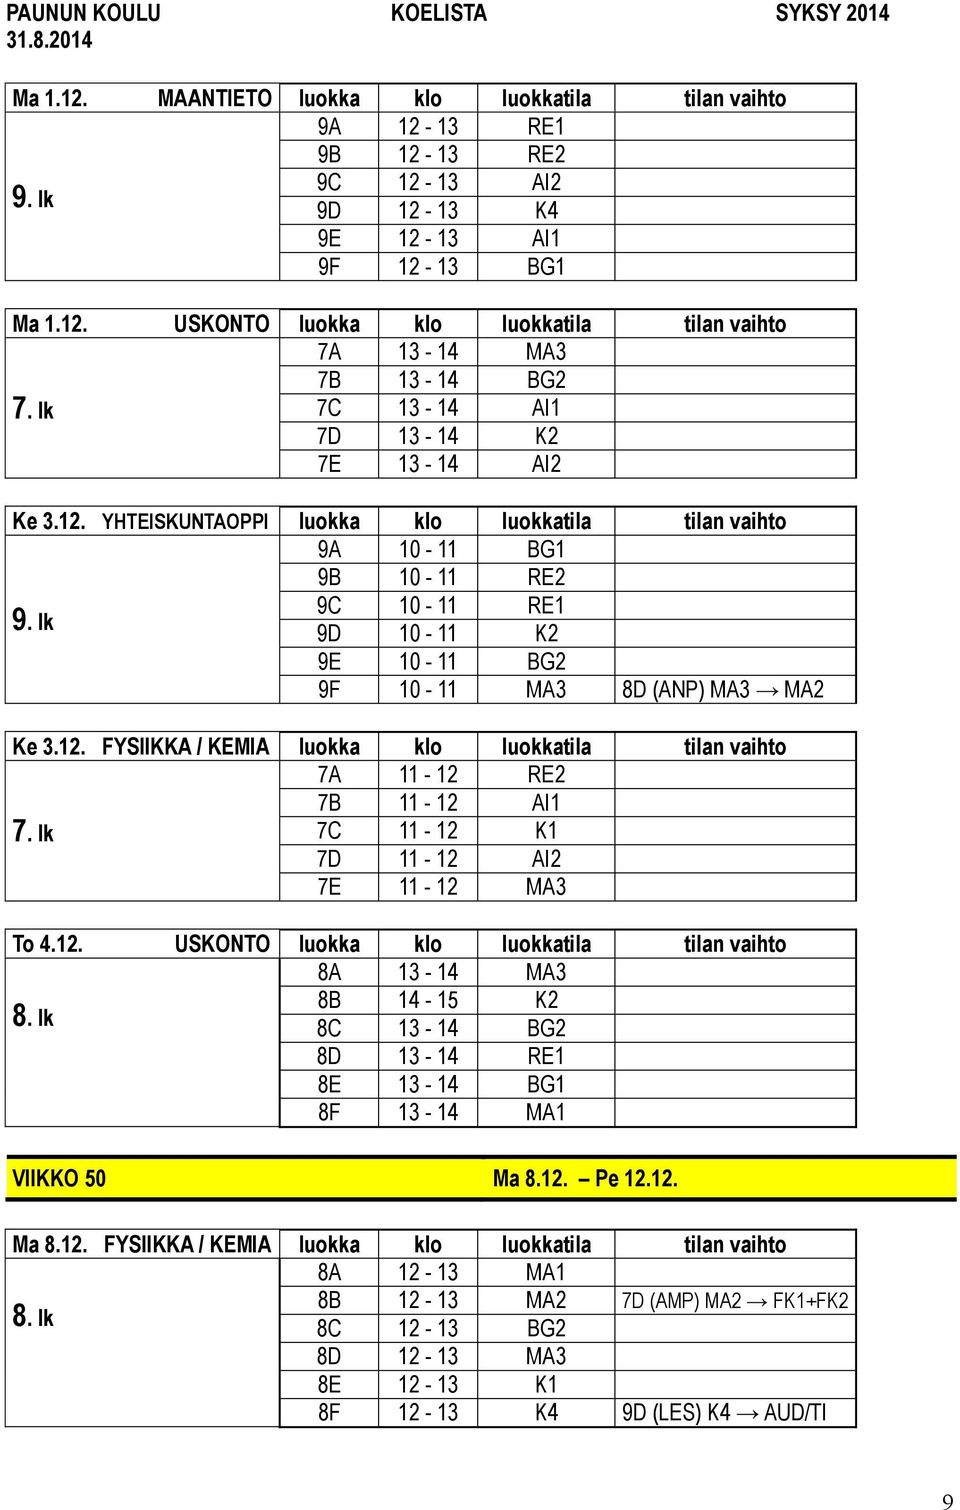 12. USKONTO luokka klo luokkatila tilan vaihto 8A 13-14 MA3 8B 14-15 K2 8C 13-14 BG2 8D 13-14 RE1 8E 13-14 BG1 8F 13-14 MA1 VIIKKO 50 Ma 8.12. Pe 12.12. Ma 8.12. FYSIIKKA / KEMIA luokka klo luokkatila tilan vaihto 8A 12-13 MA1 8B 12-13 MA2 7D (AMP) MA2 FK1+FK2 8C 12-13 BG2 8D 12-13 MA3 8E 12-13 K1 8F 12-13 K4 9D (LES) K4 AUD/TI 9